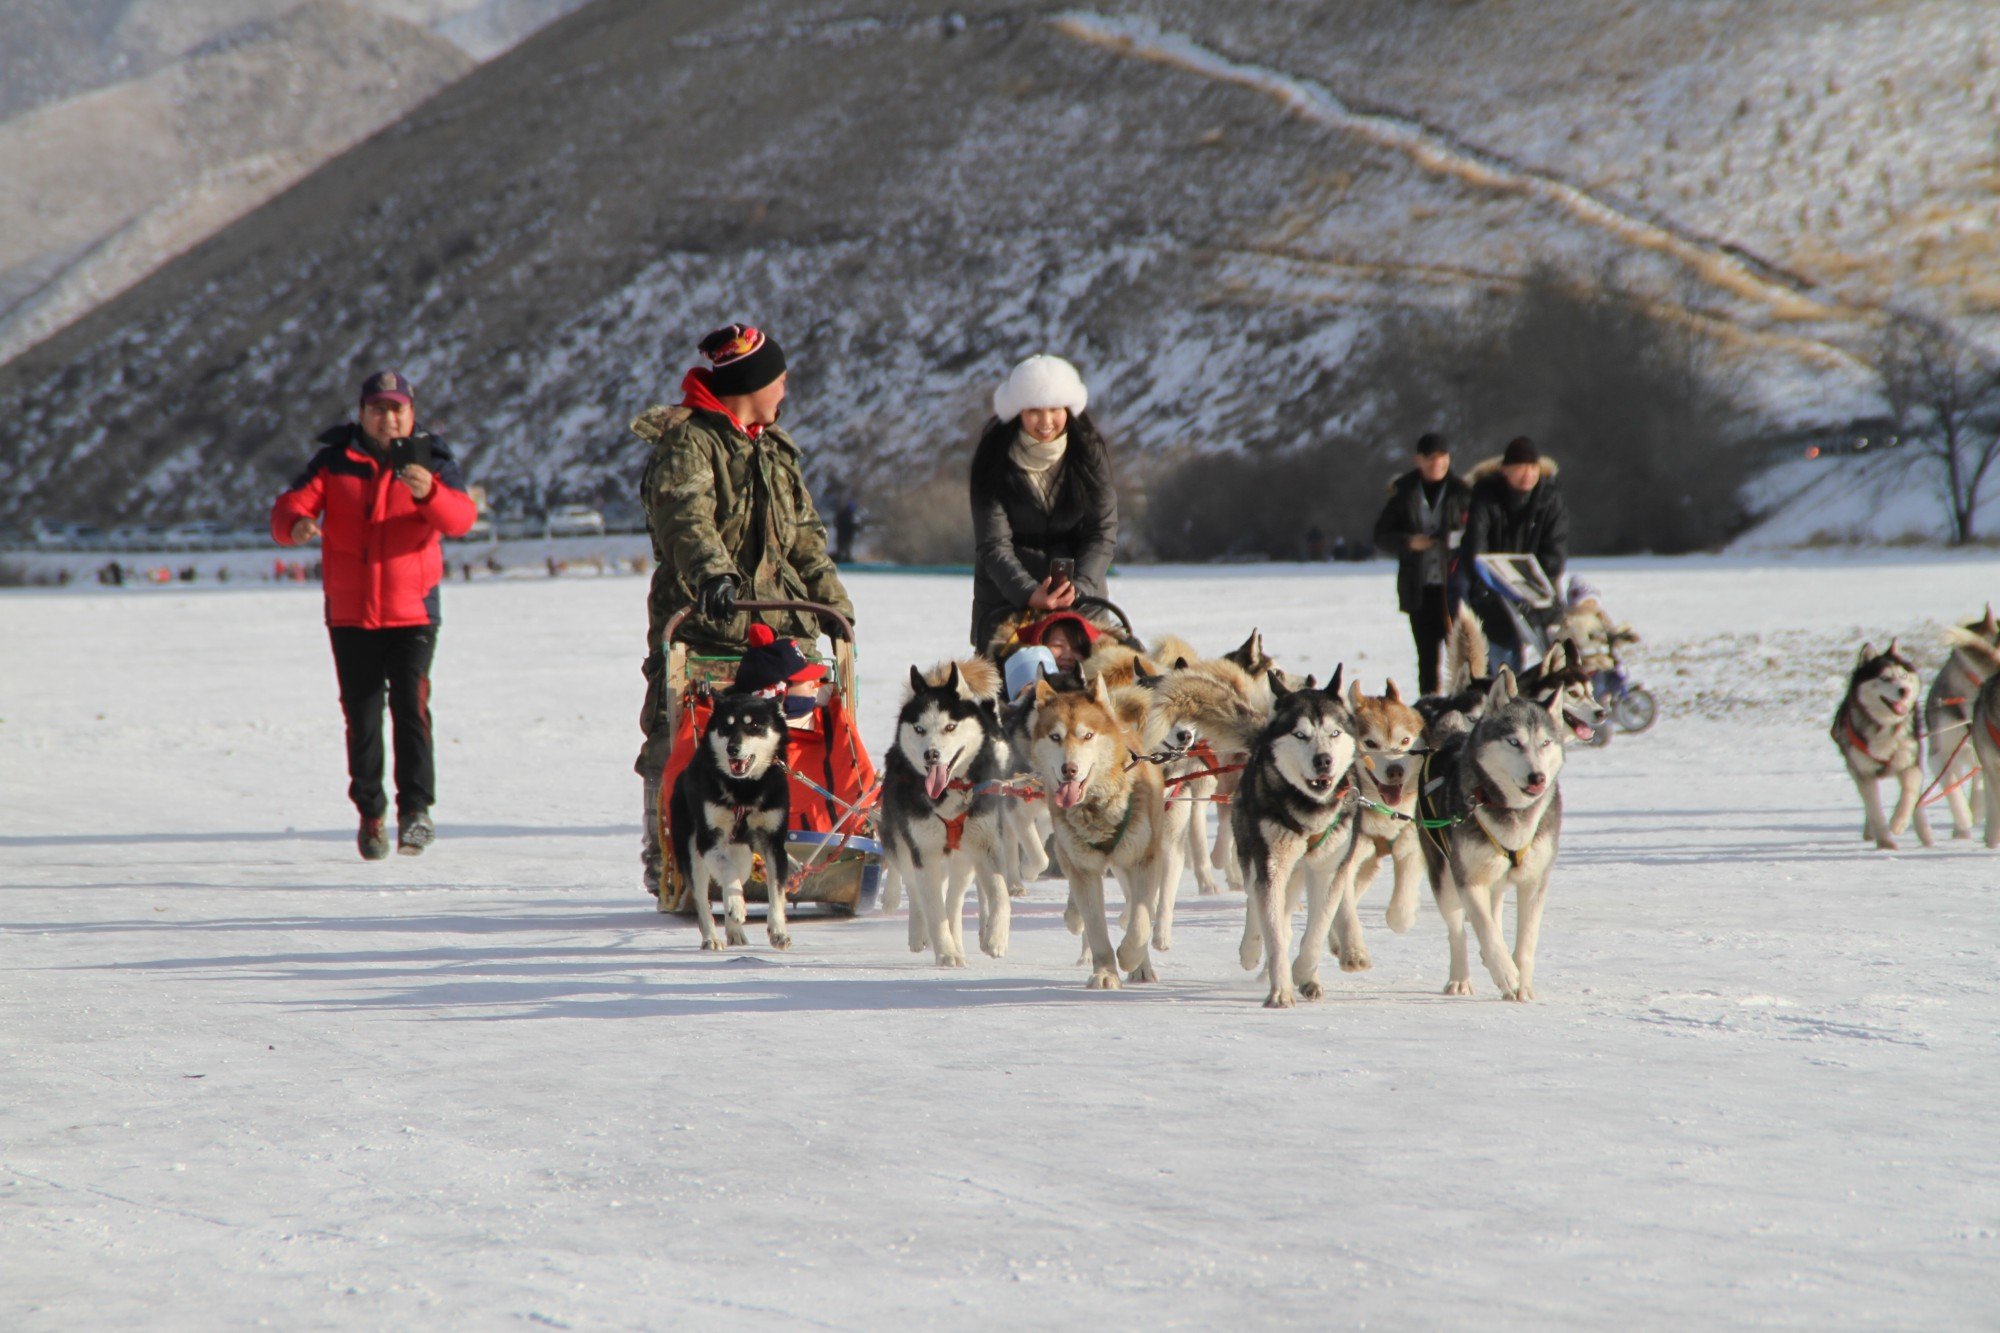 Le festival d'hiver d'Oulan-Bator sera organisé le 16 février